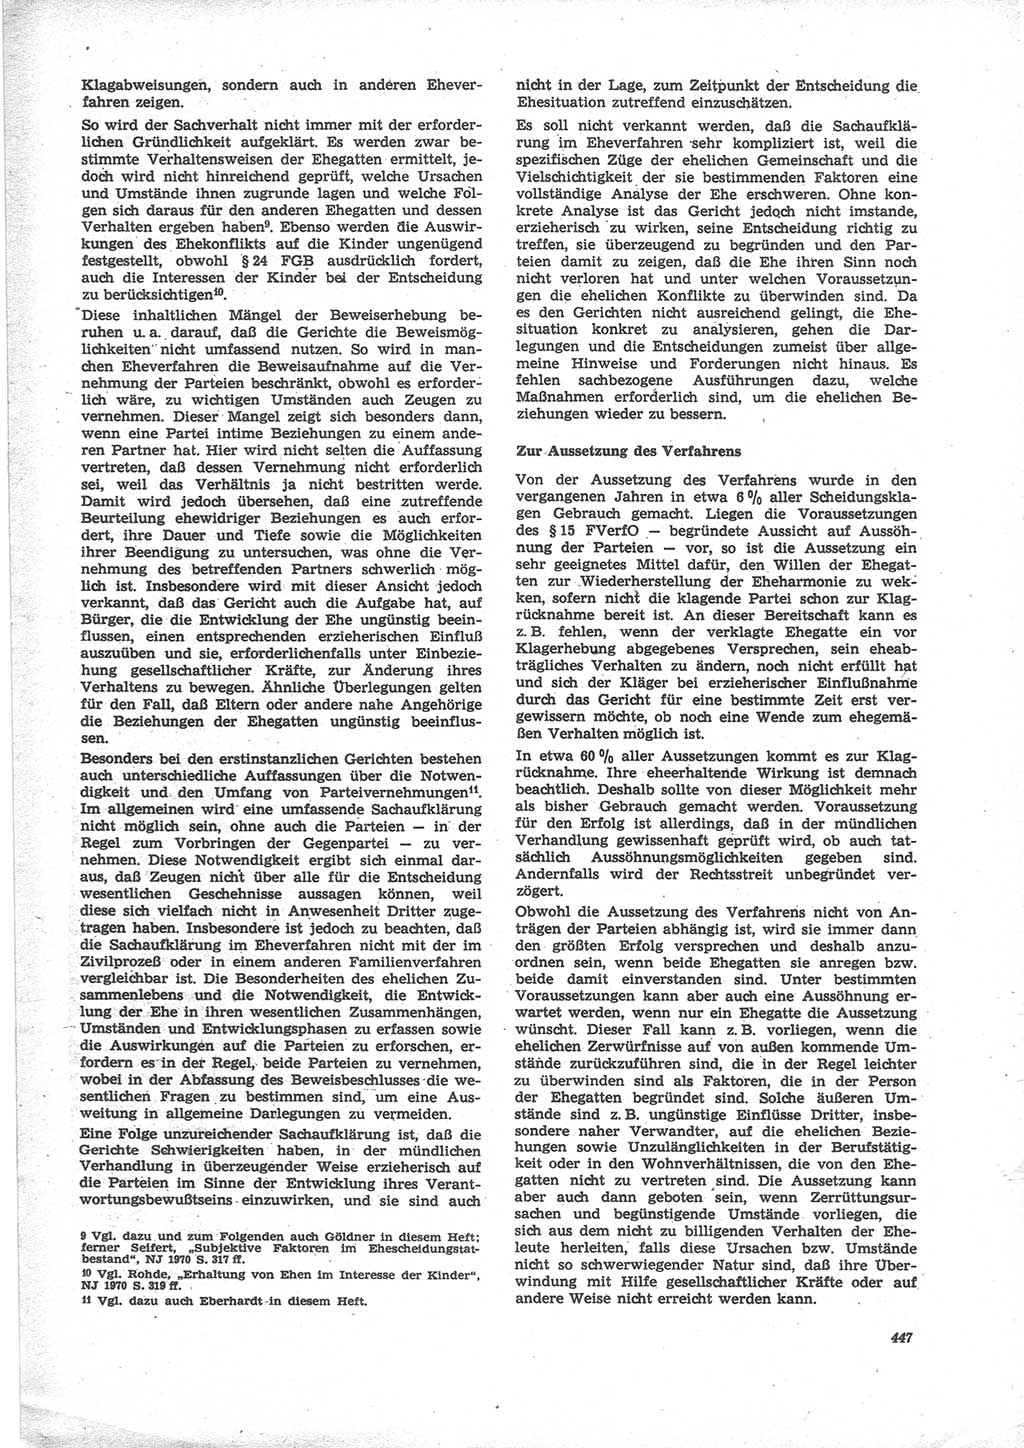 Neue Justiz (NJ), Zeitschrift für Recht und Rechtswissenschaft [Deutsche Demokratische Republik (DDR)], 24. Jahrgang 1970, Seite 447 (NJ DDR 1970, S. 447)